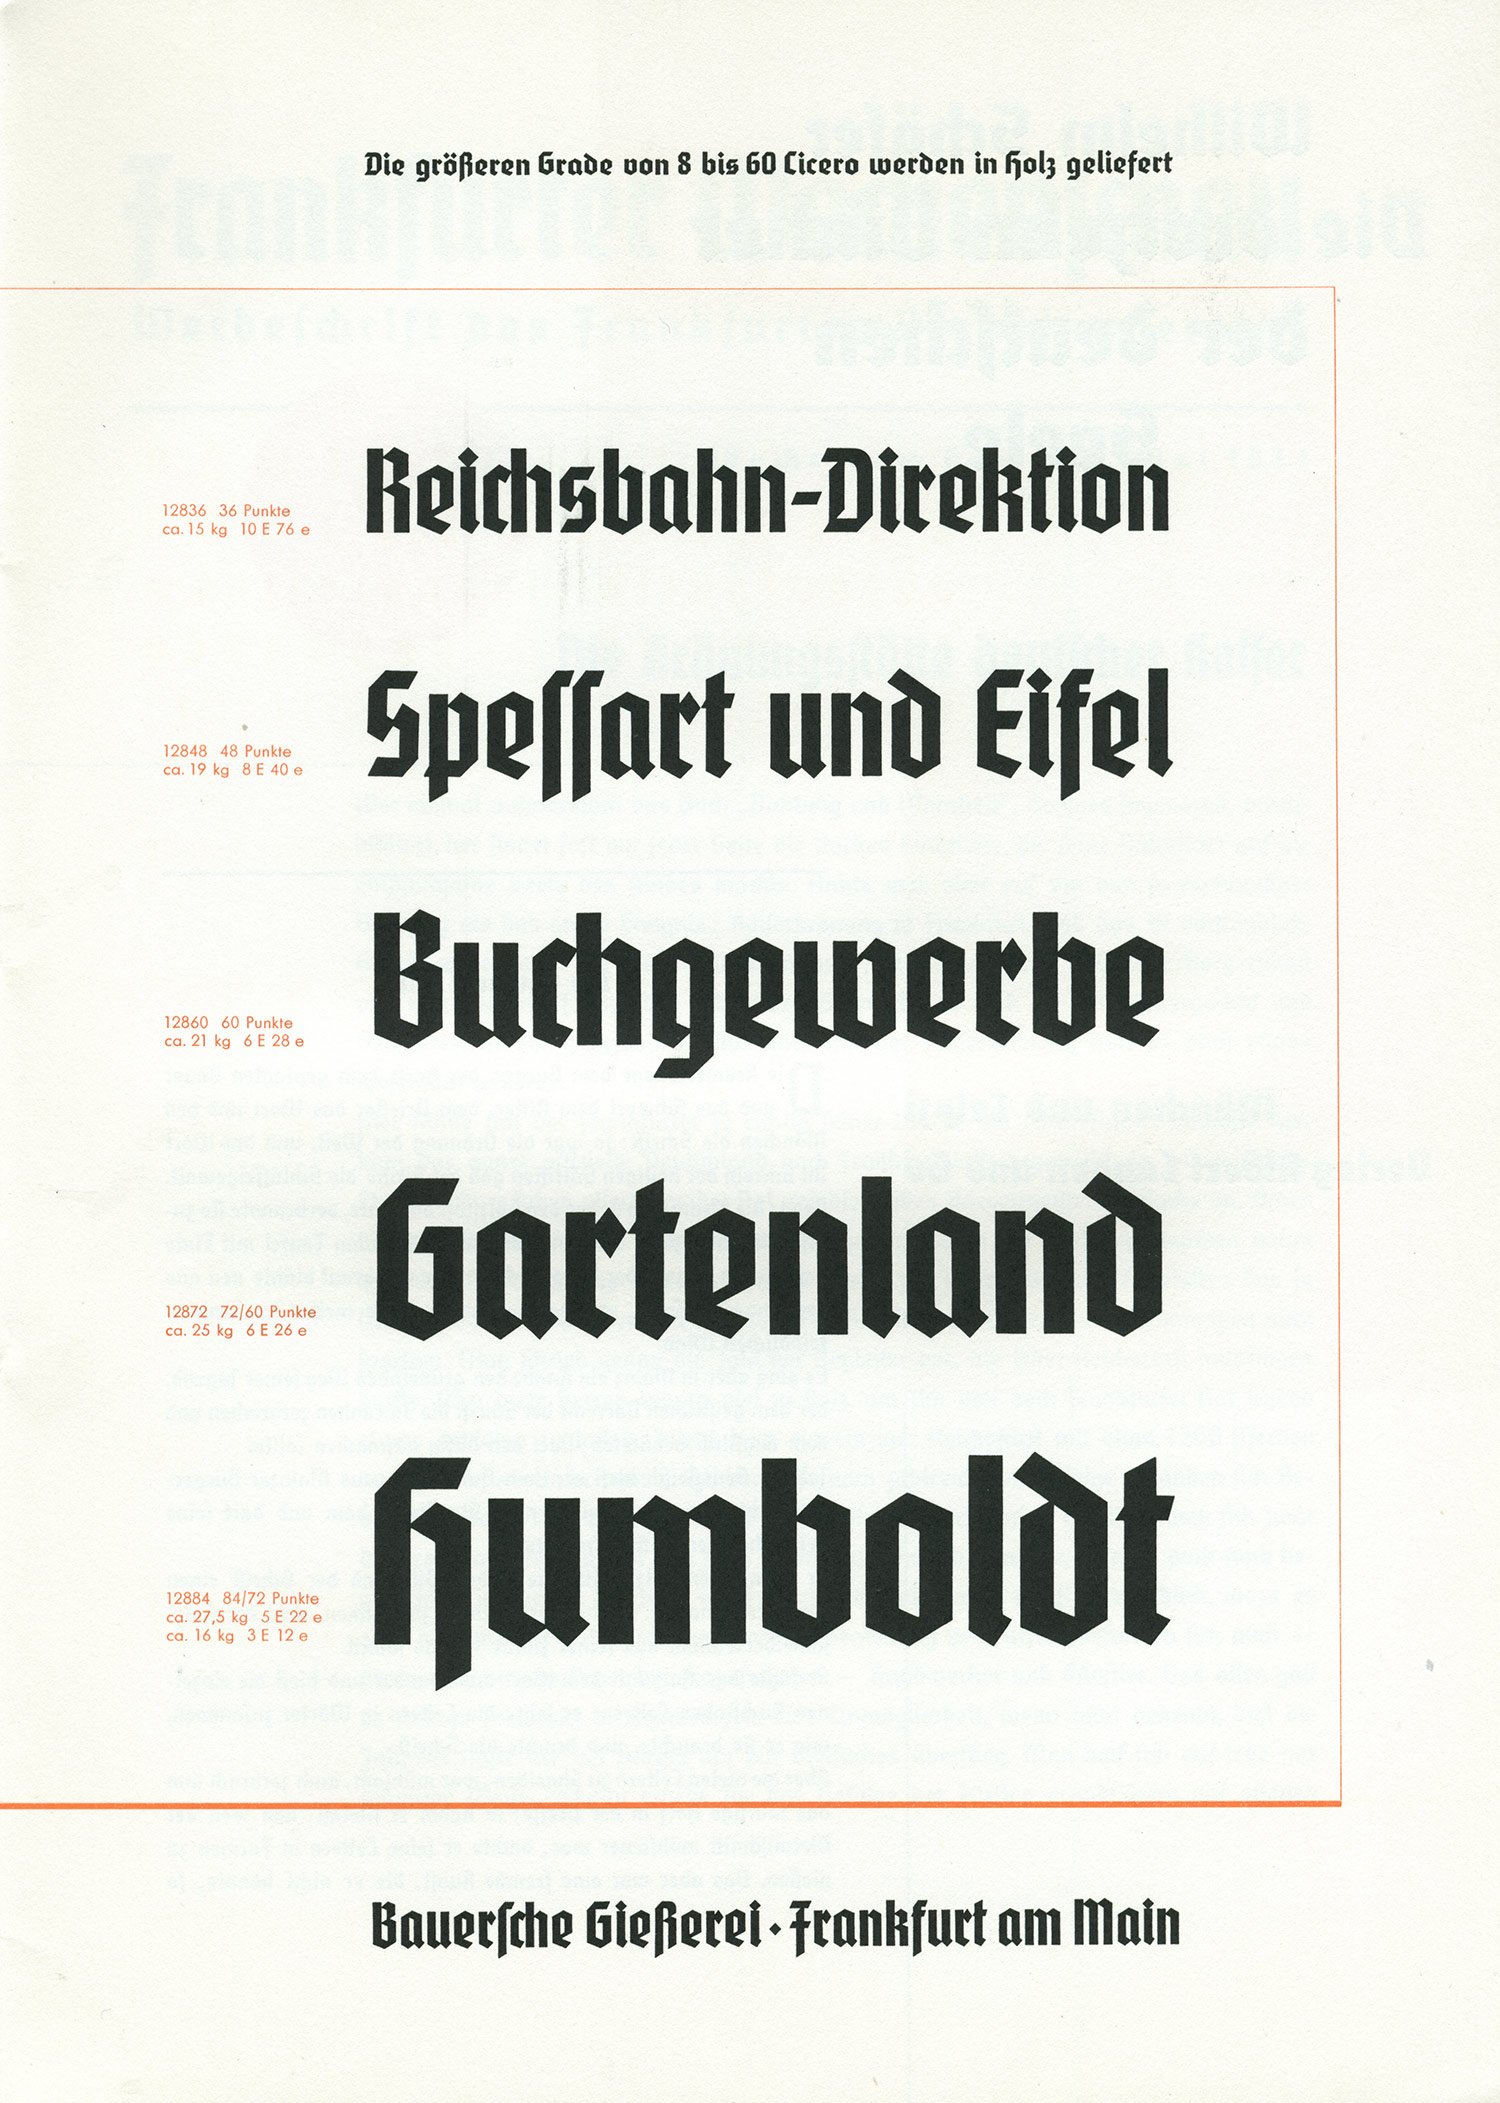 flickr.com — Bauersche Gießerei, Frankfurt a.M.: Element. Eine Schrift, die Tradition und Gegenwart vereining 